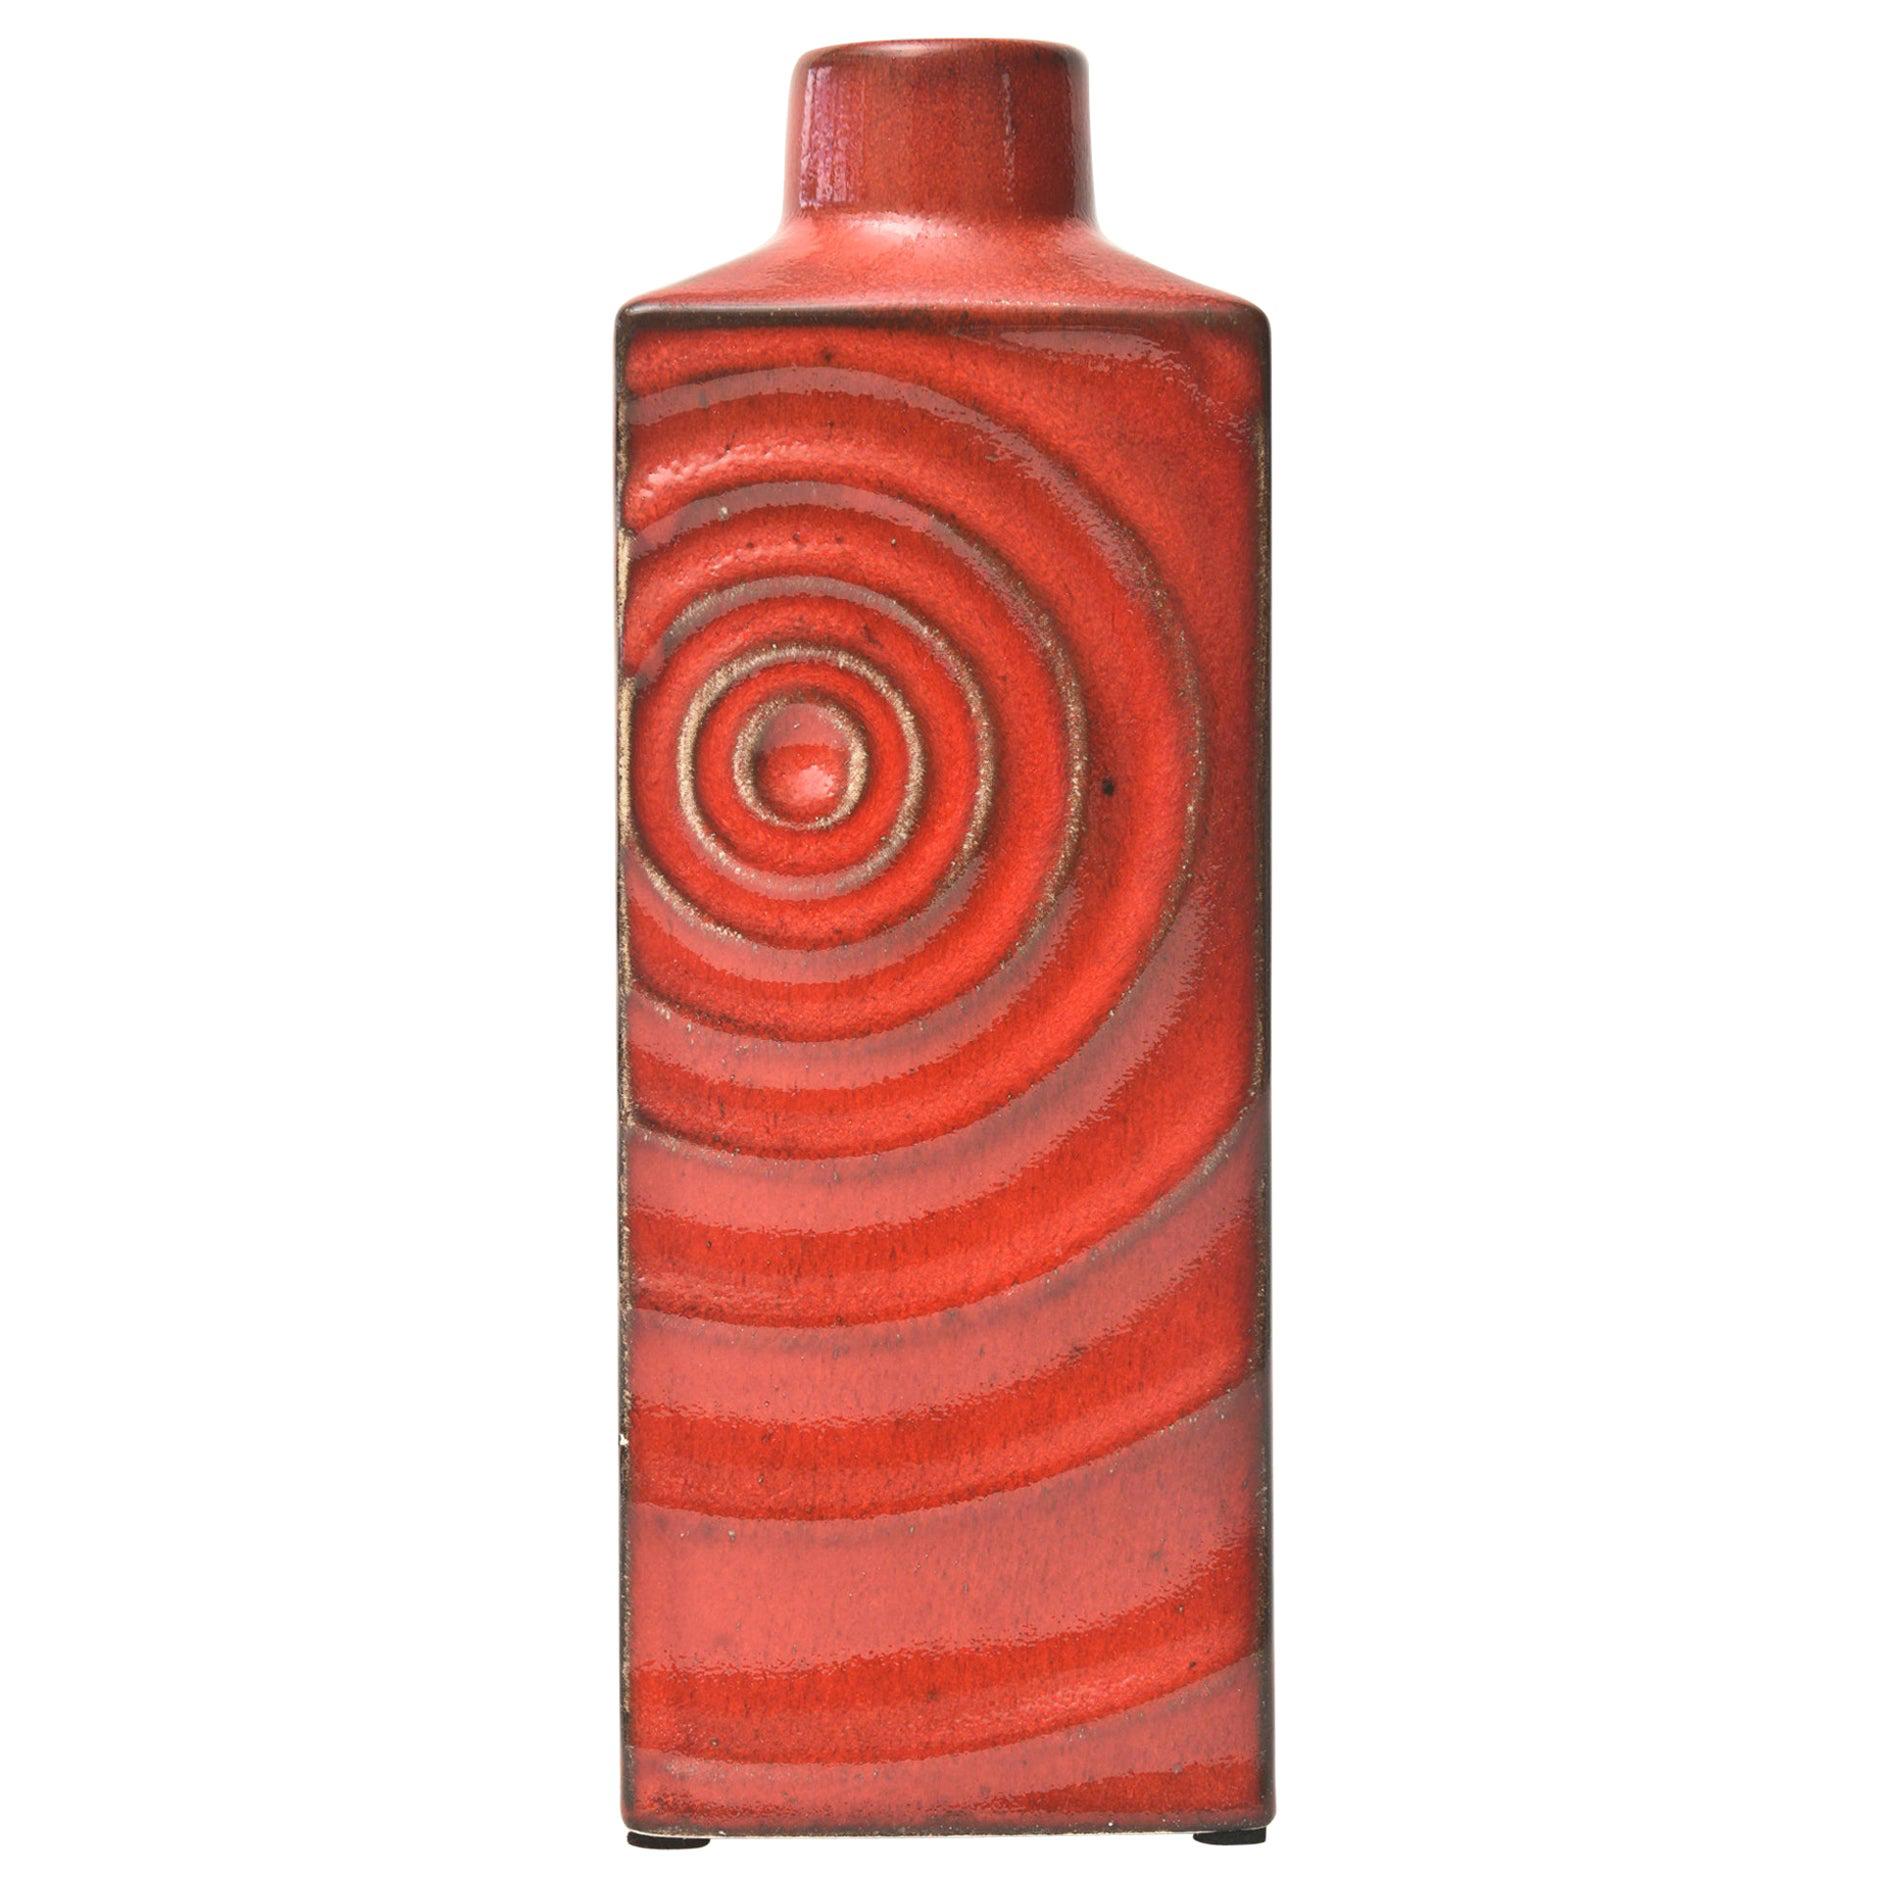 Glazed Red Ceramic Zyclon Vase by Cari Zalloni for Keramik Vintage